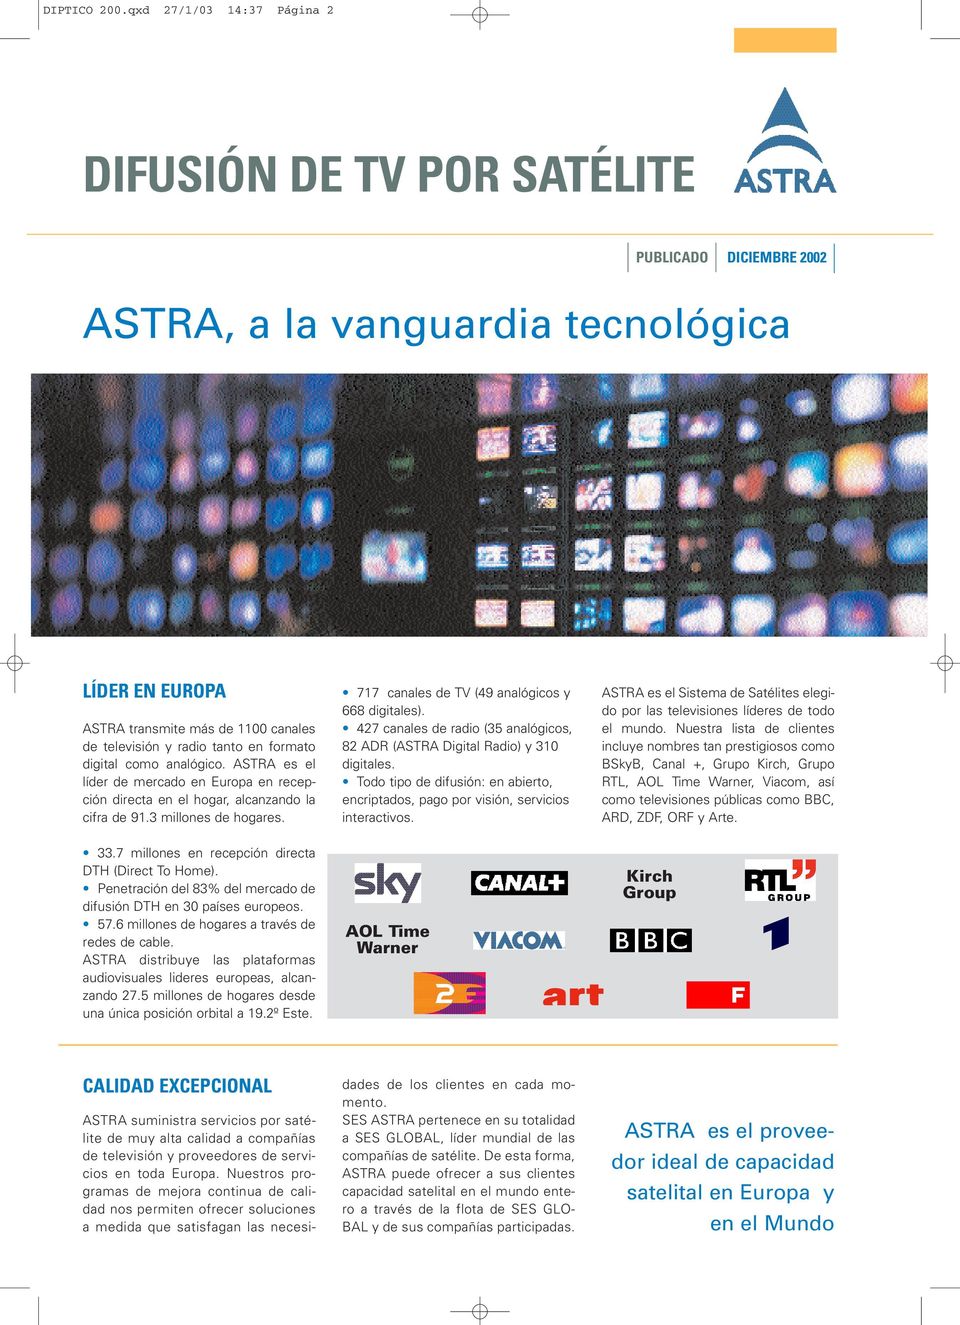 formato digital como analógico. ASTRA es el líder de mercado en Europa en recepción directa en el hogar, alcanzando la cifra de 91.3 millones de hogares.